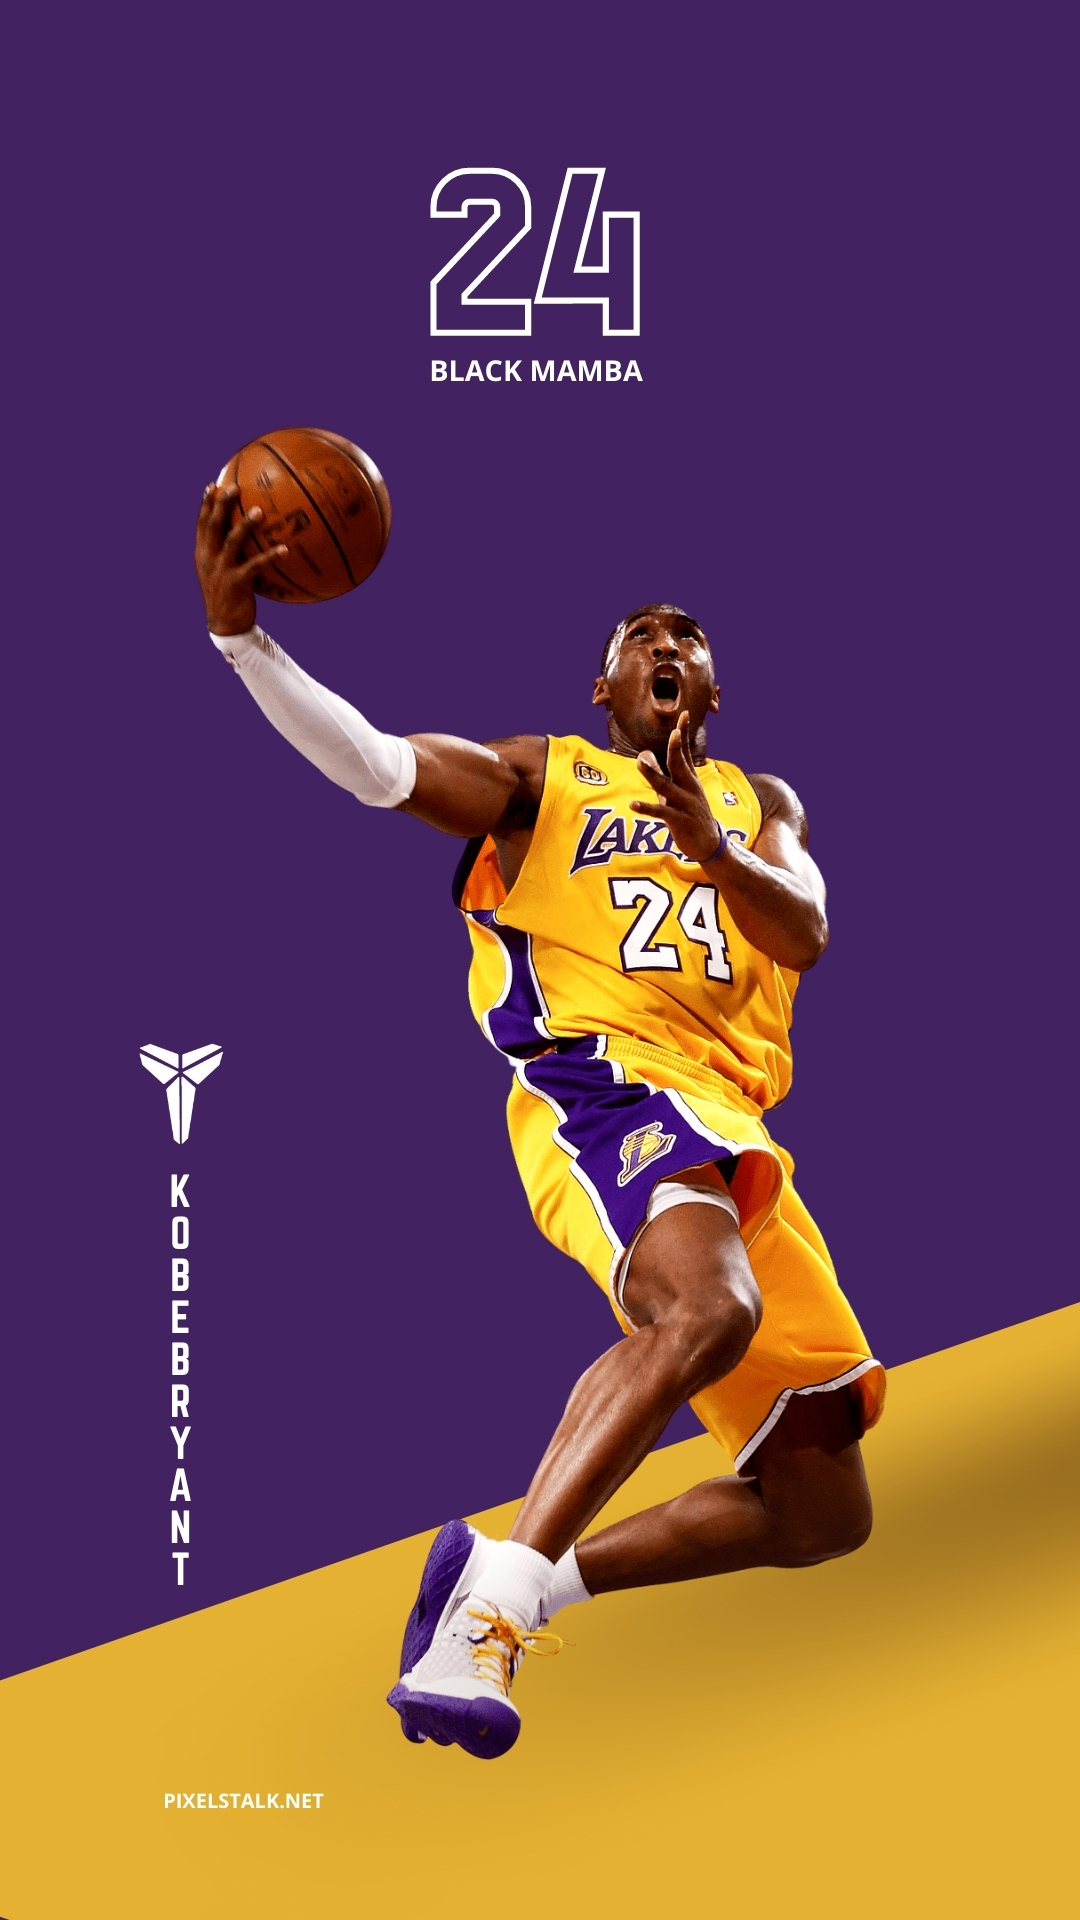 Nếu bạn là fan của Kobe Bryant, hãy đến xem hình nền mói nhất của anh ấy. Được thiết kế tinh xảo và độ phân giải cao, chắc chắn sẽ khiến bạn phấn khích khi nhìn thấy Kobe trong hình nền của mình.